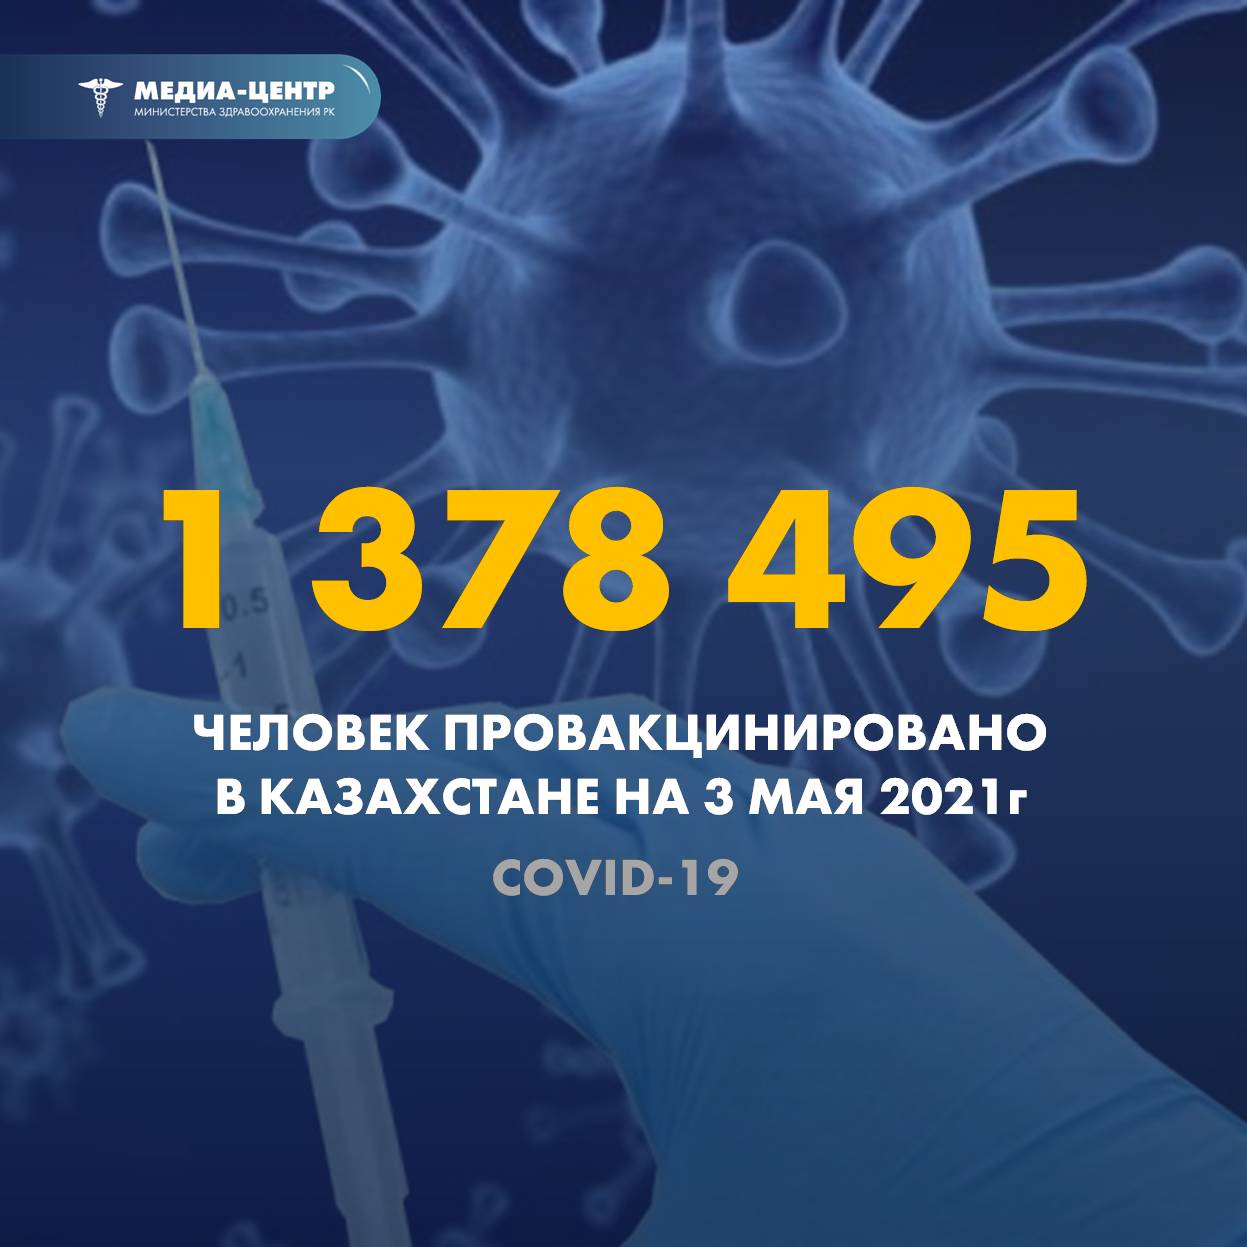 1 378 495 человек провакцинировано в Казахстане на 3 мая 2021 г